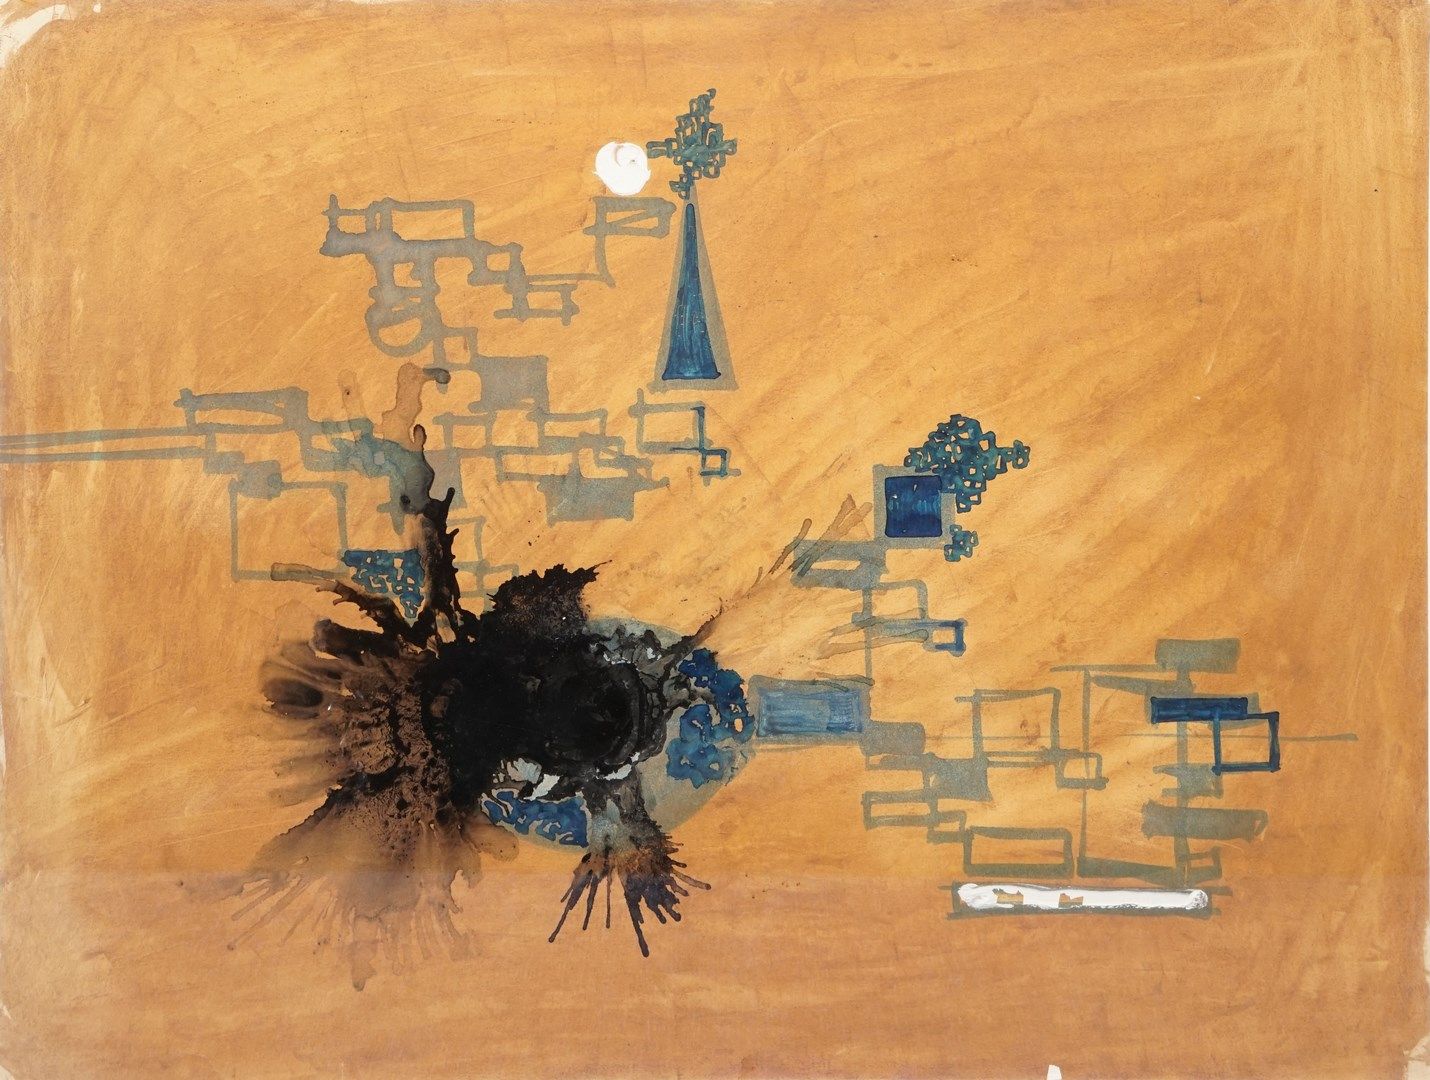 Null MIKAÏLOFF Just, 1936-1969

无题黑色和棕色

纸上水彩、印度墨水和水粉画（小幅缺失）。

无符号

43,5x58厘米


&hellip;